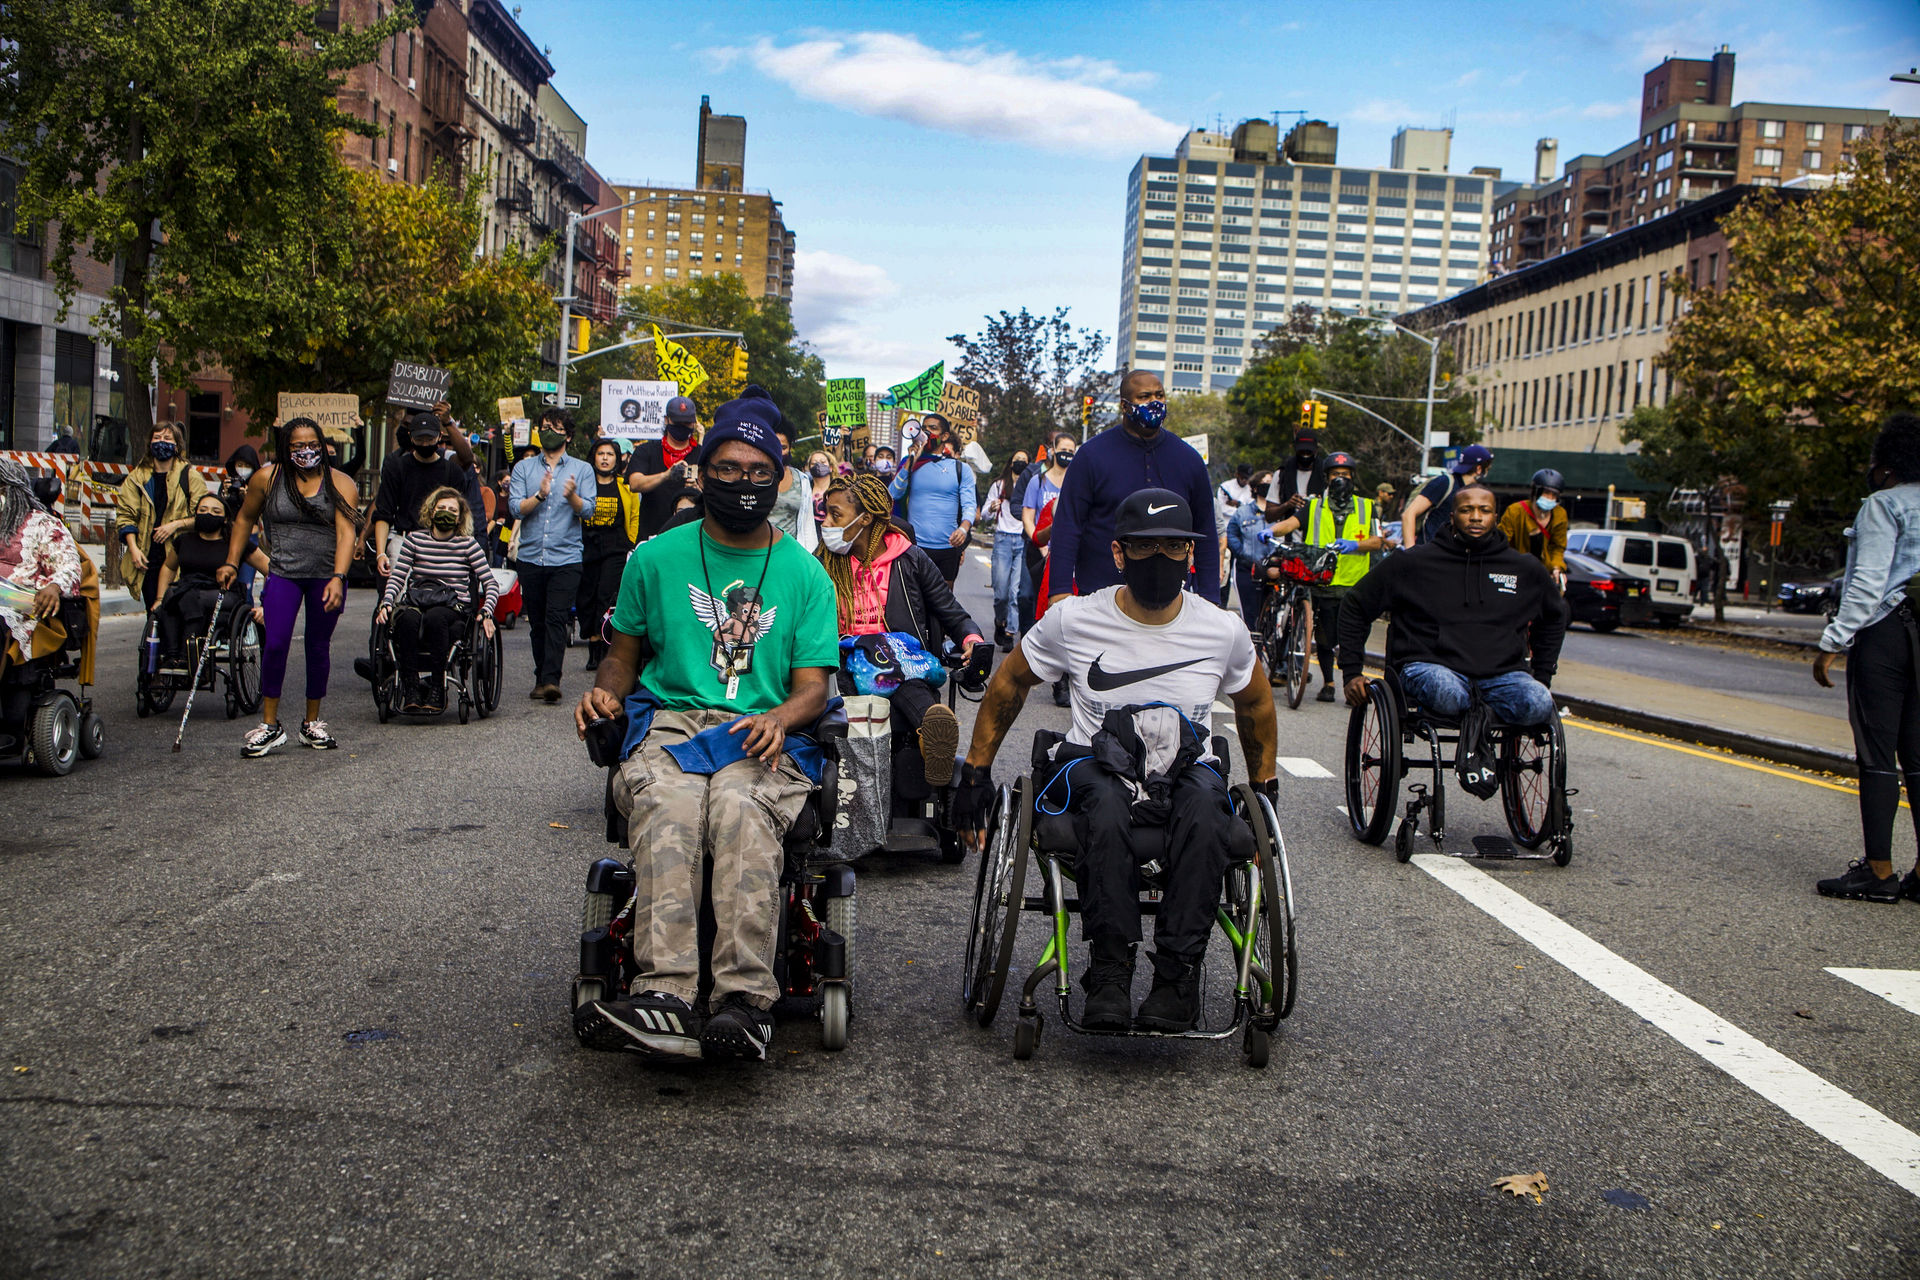 Dos hombres en sillas de ruedas con máscaras encabezan una multitud de personas, algunos en sillas de ruedas o con bastones, algunos con carteles.